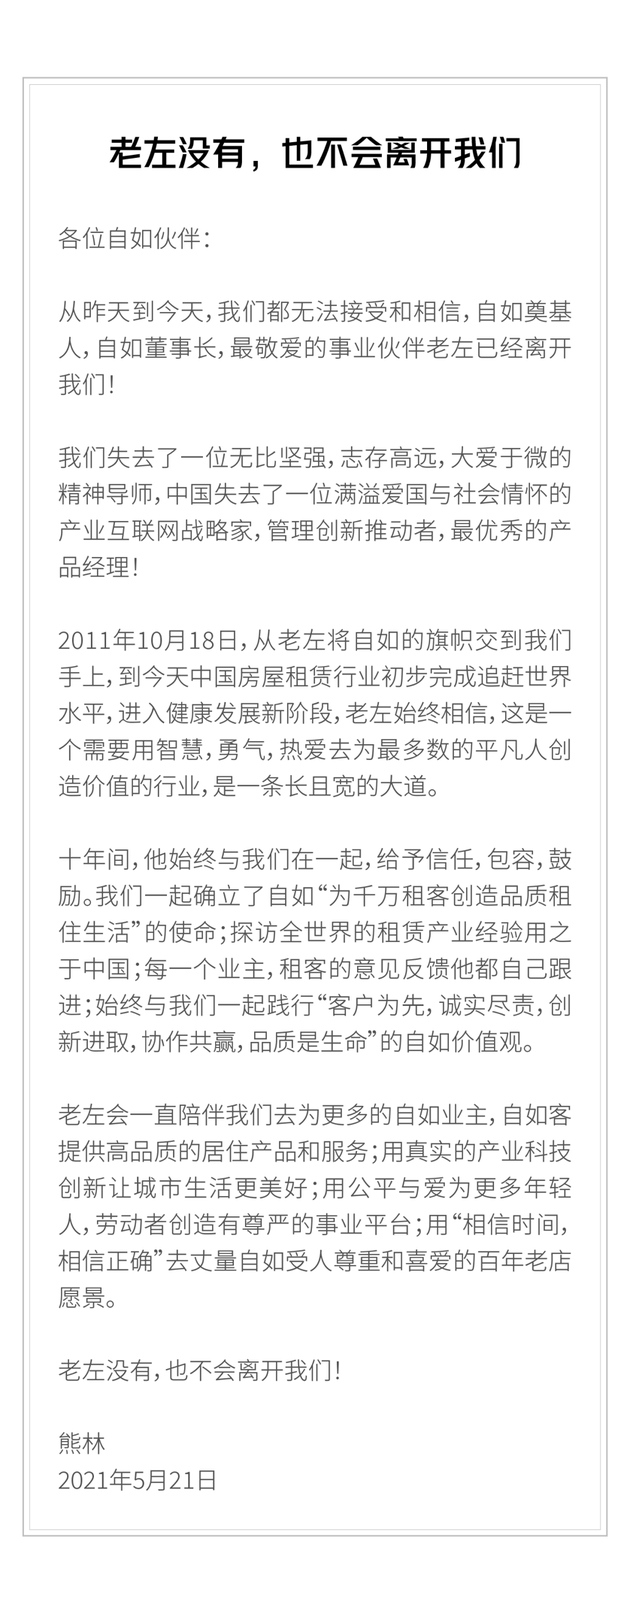 自如CEO熊林发文悼念左晖十年间给予信任包容鼓励